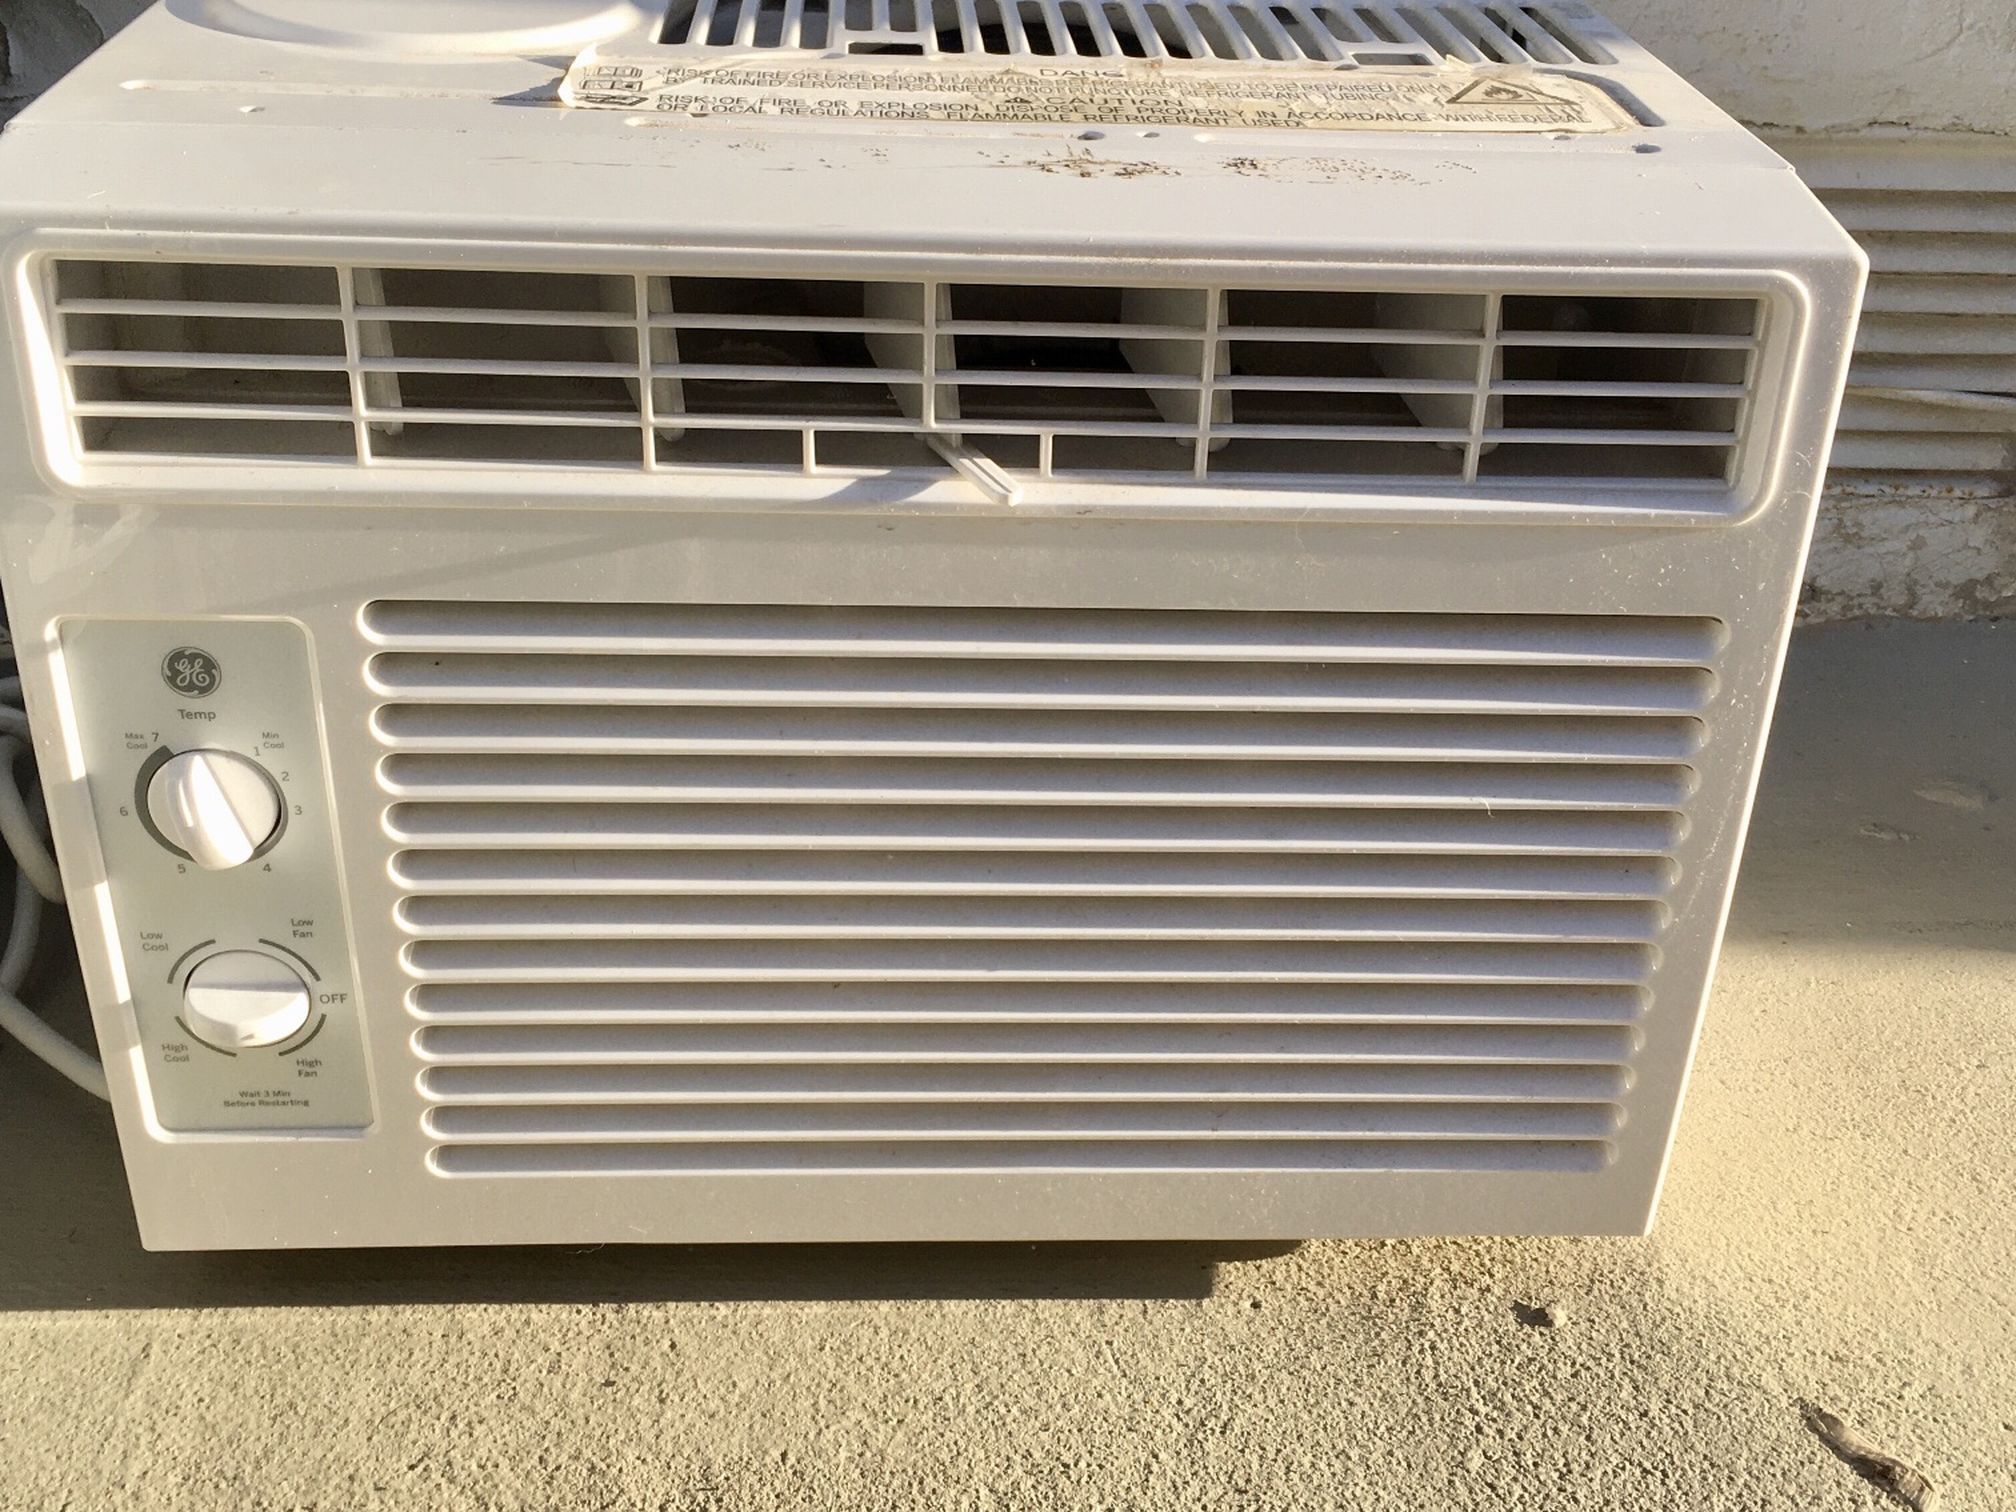 Air Conditioner - GE Window Unit